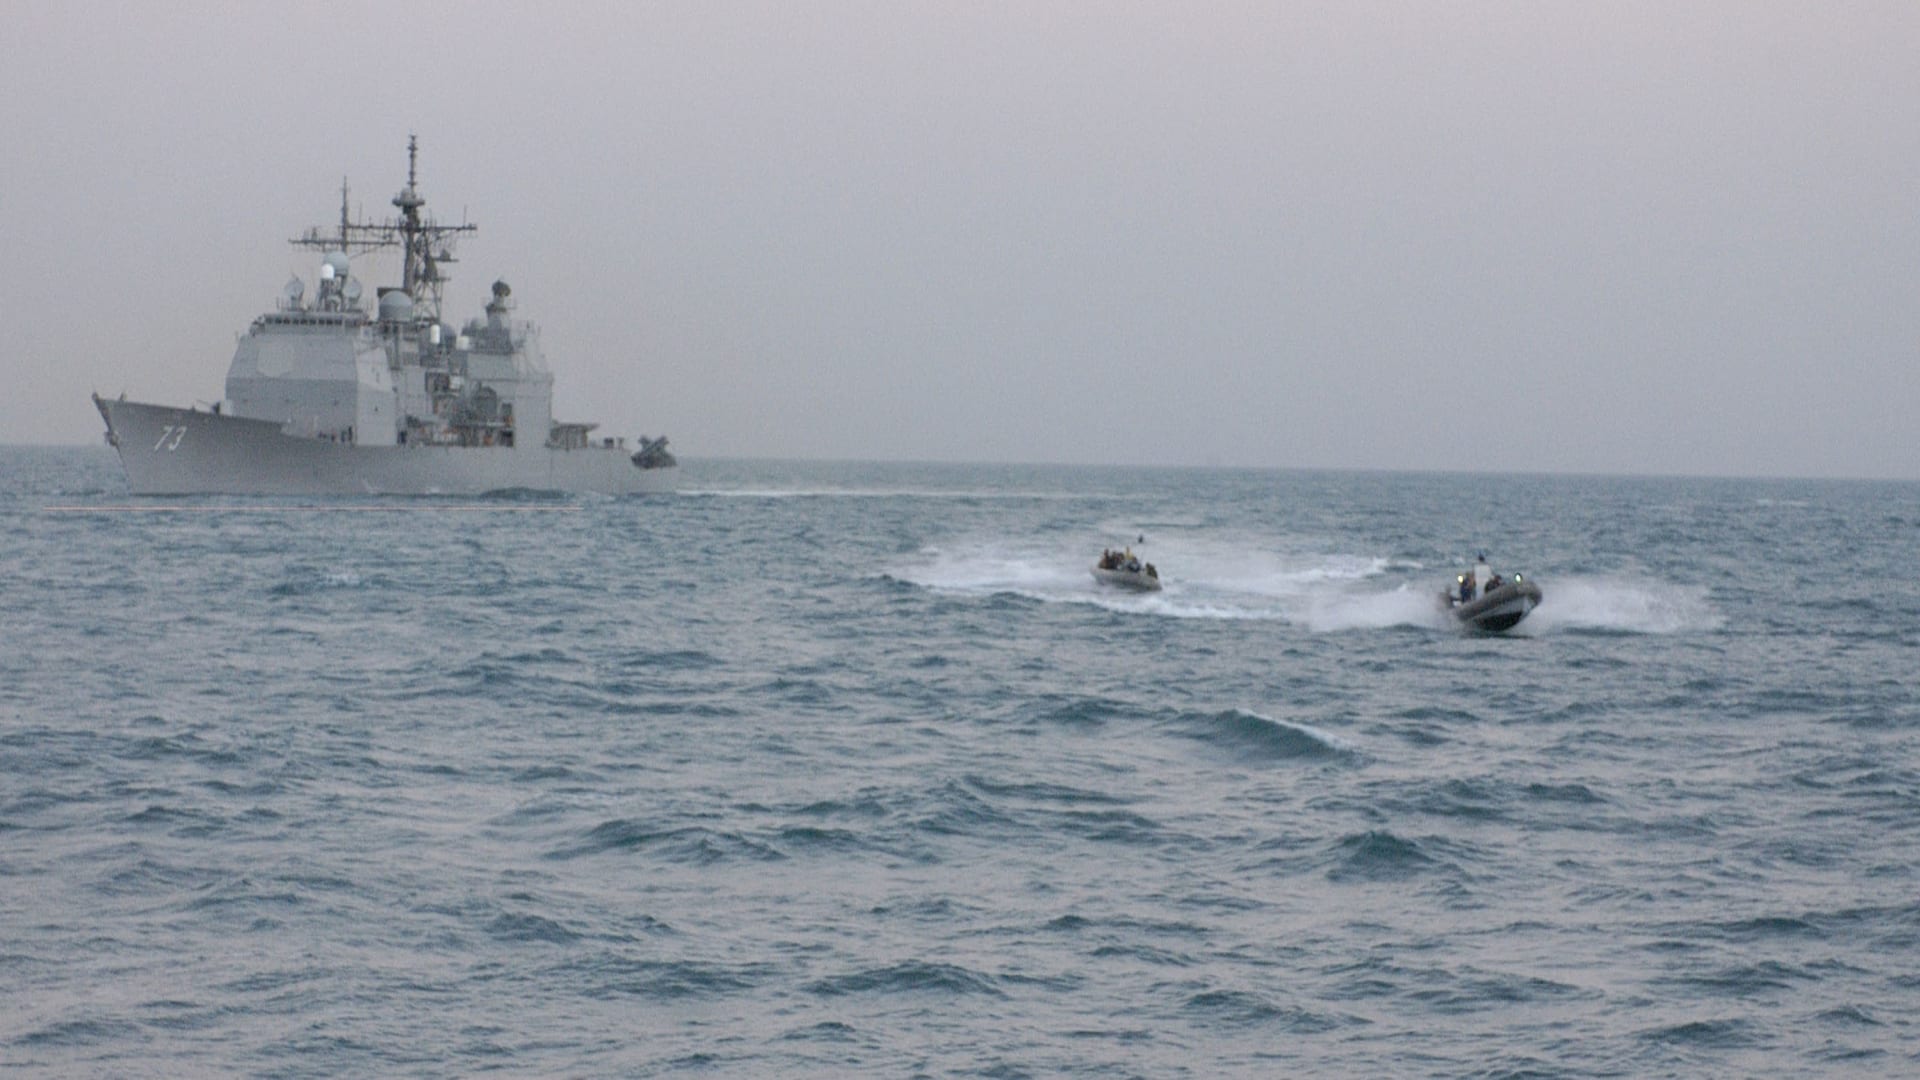 إيران تستعرض "عضلاتها" البحرية في الخليج.. وتحذيرات أمريكية